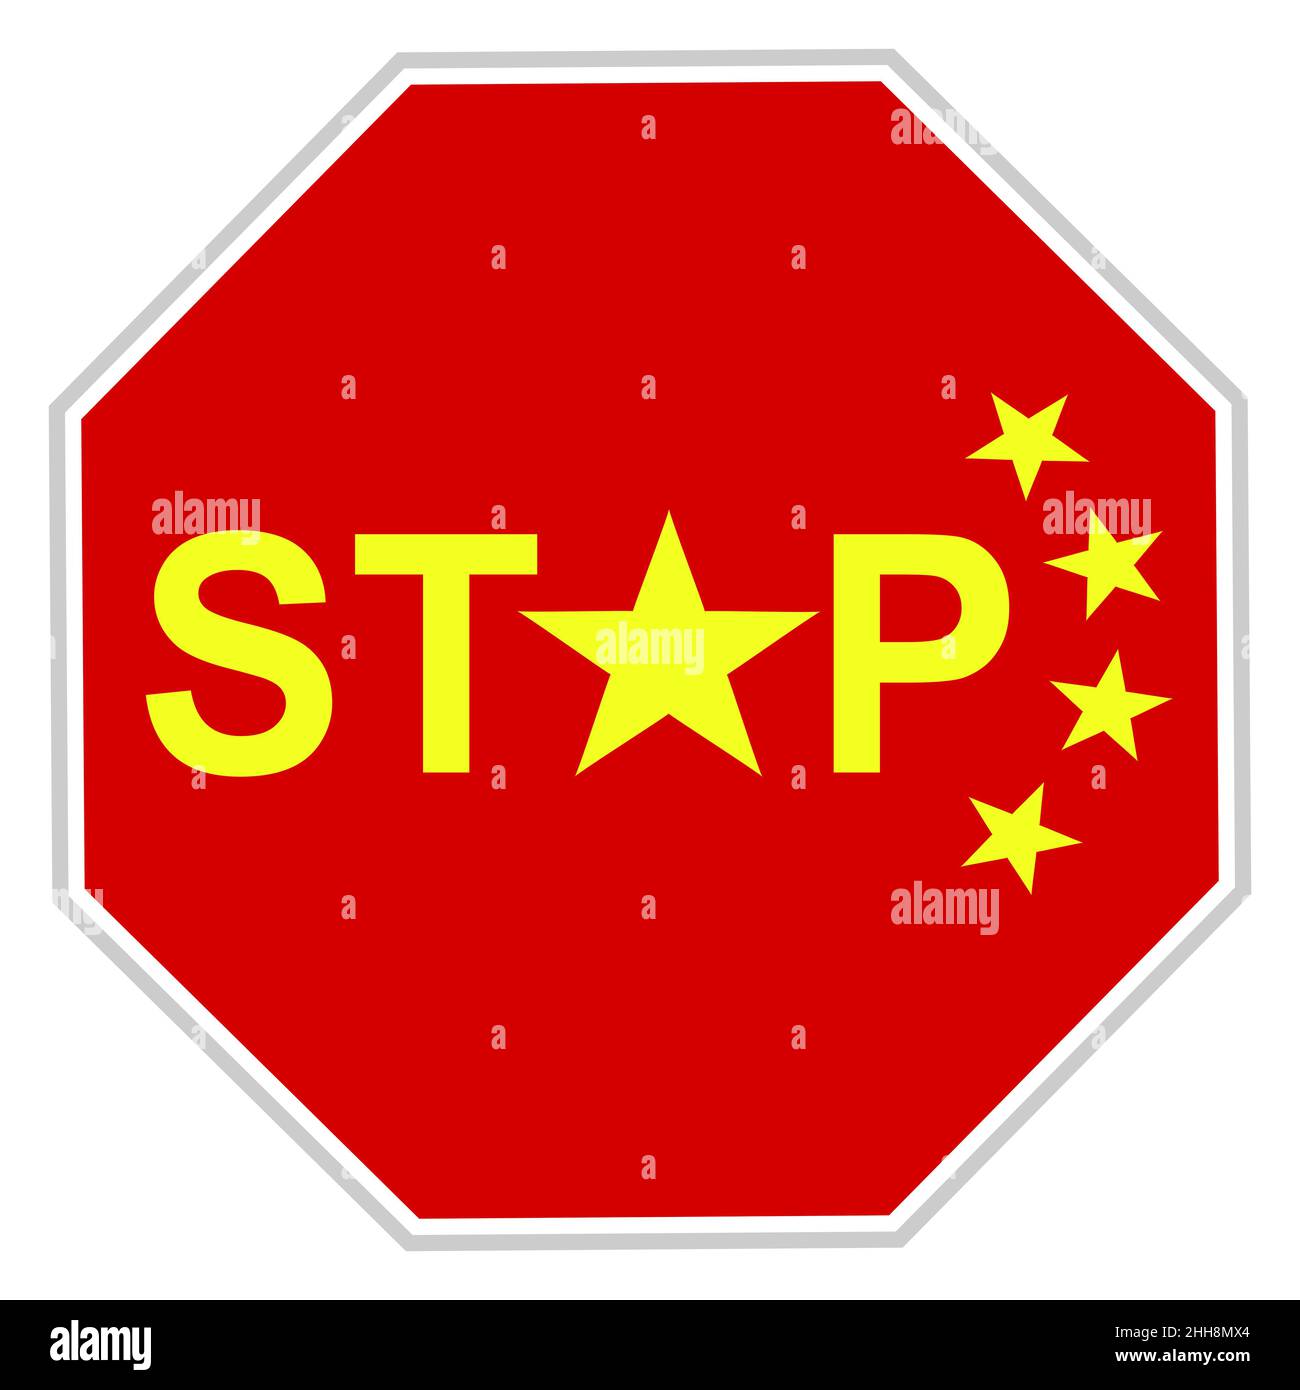 Illustration einer chinesischen Flagge, die den Import ausländischer Waren, insbesondere aus den USA, aufgrund eines Handelskrieges verbietet Stockfoto